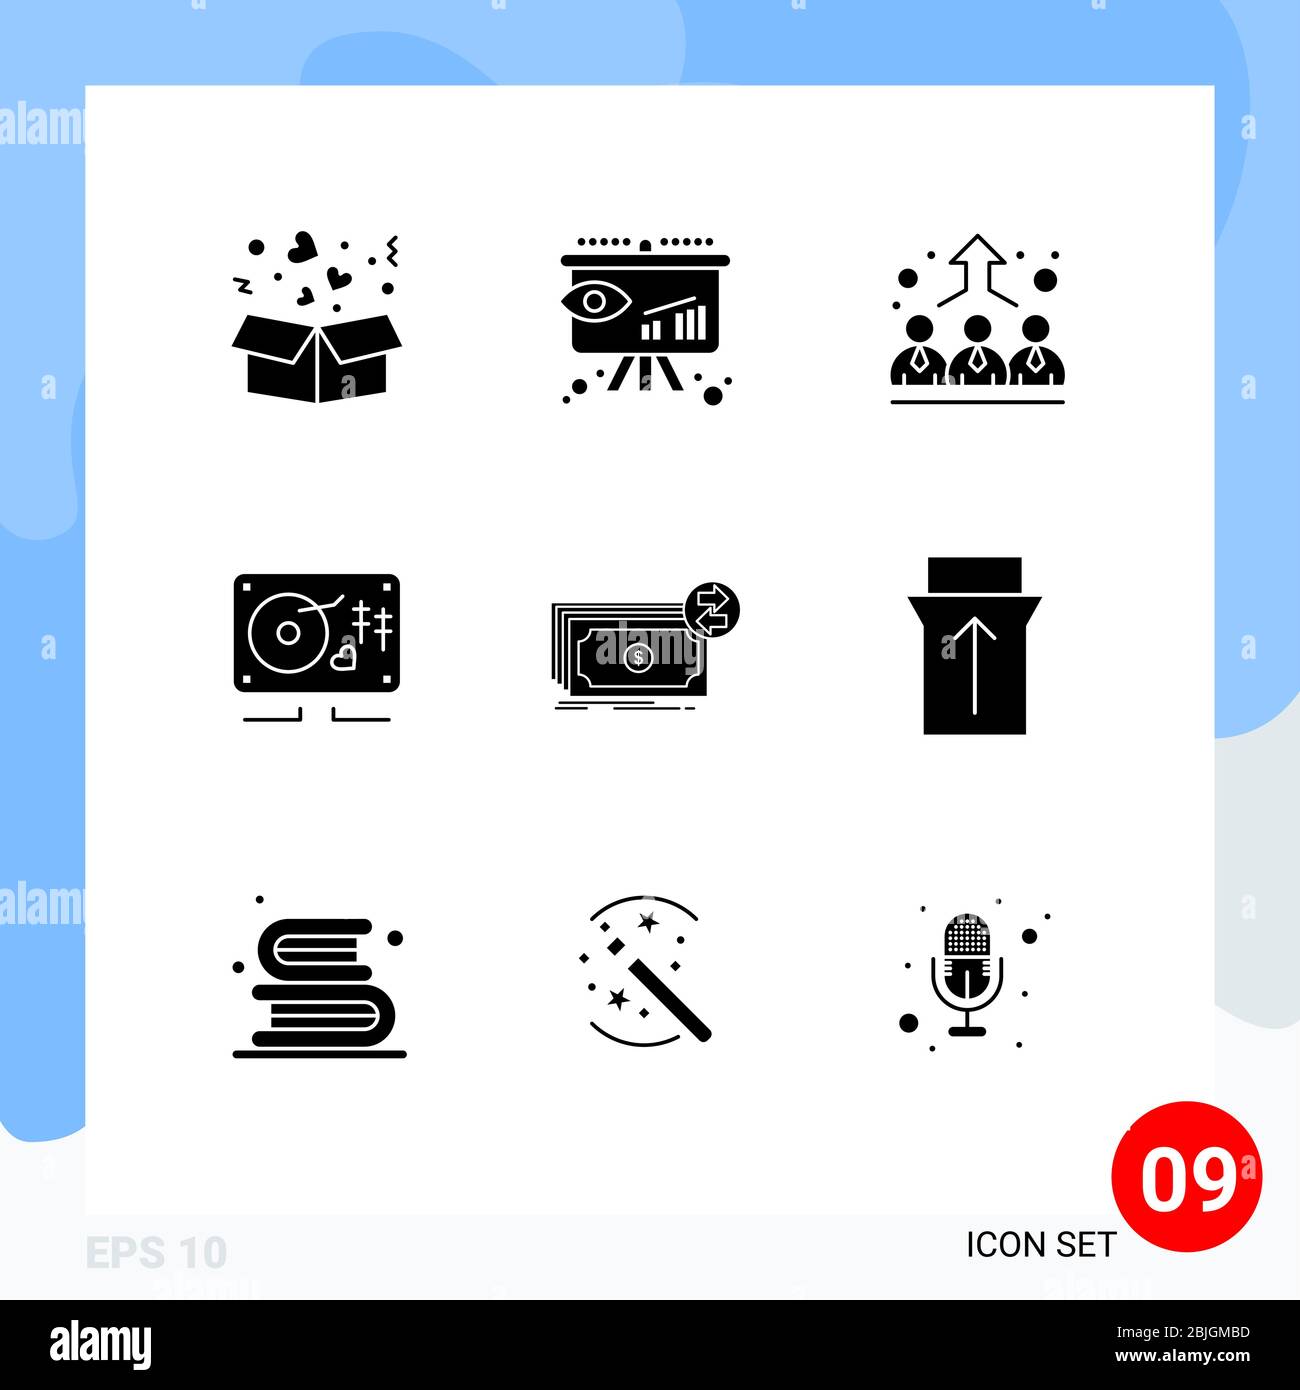 9 iconos creativos modernos signos y símbolos de dinero en efectivo, boda, negocios, corazón, música elementos editables de diseño vectorial Ilustración del Vector